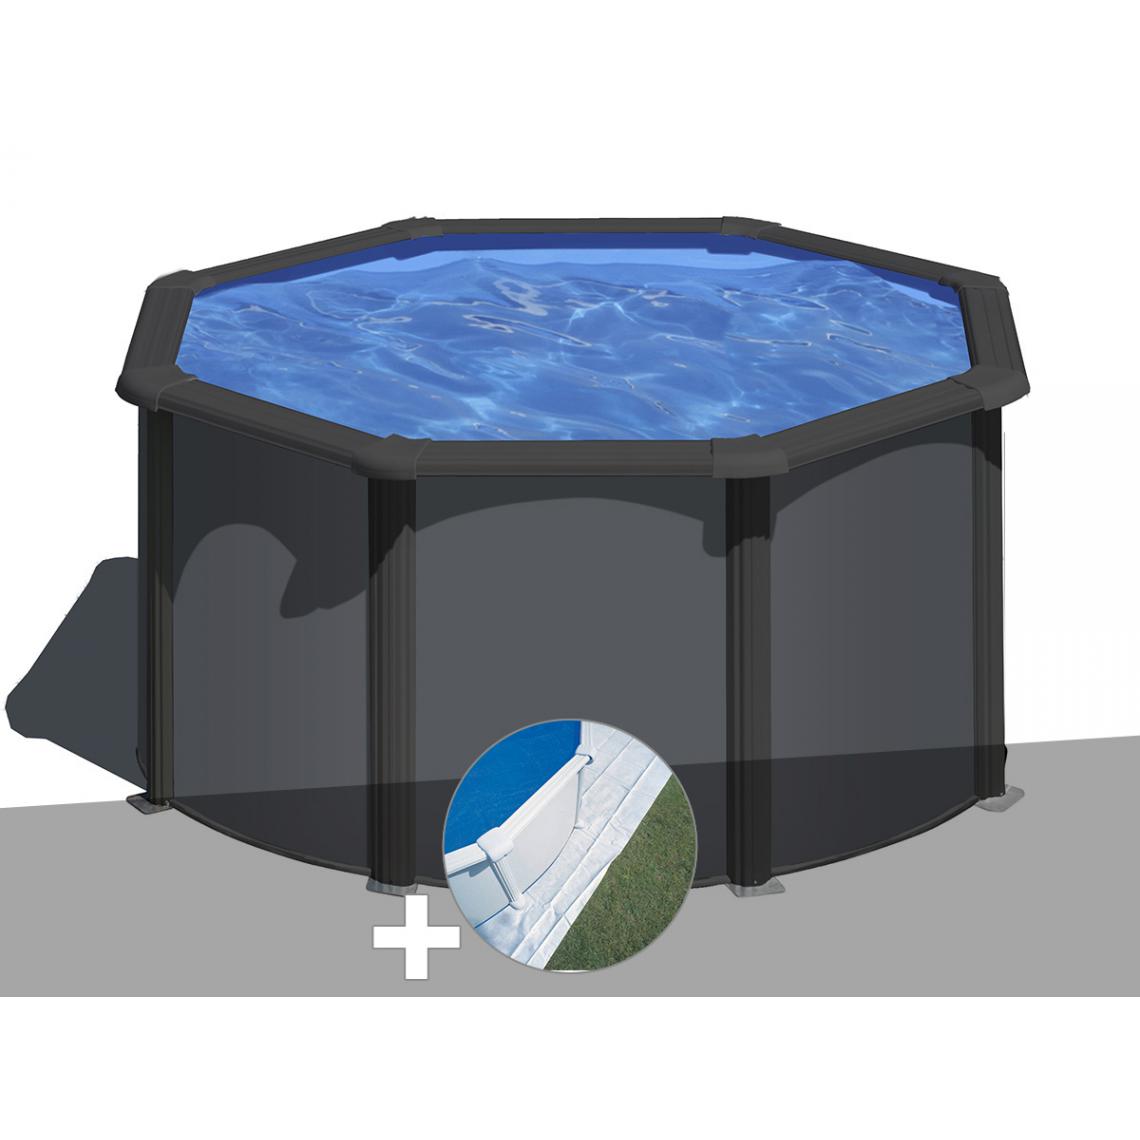 Gre - Kit piscine acier gris anthracite Gré Louko ronde 2,60 x 1,22 m + Tapis de sol - Piscines acier et résine